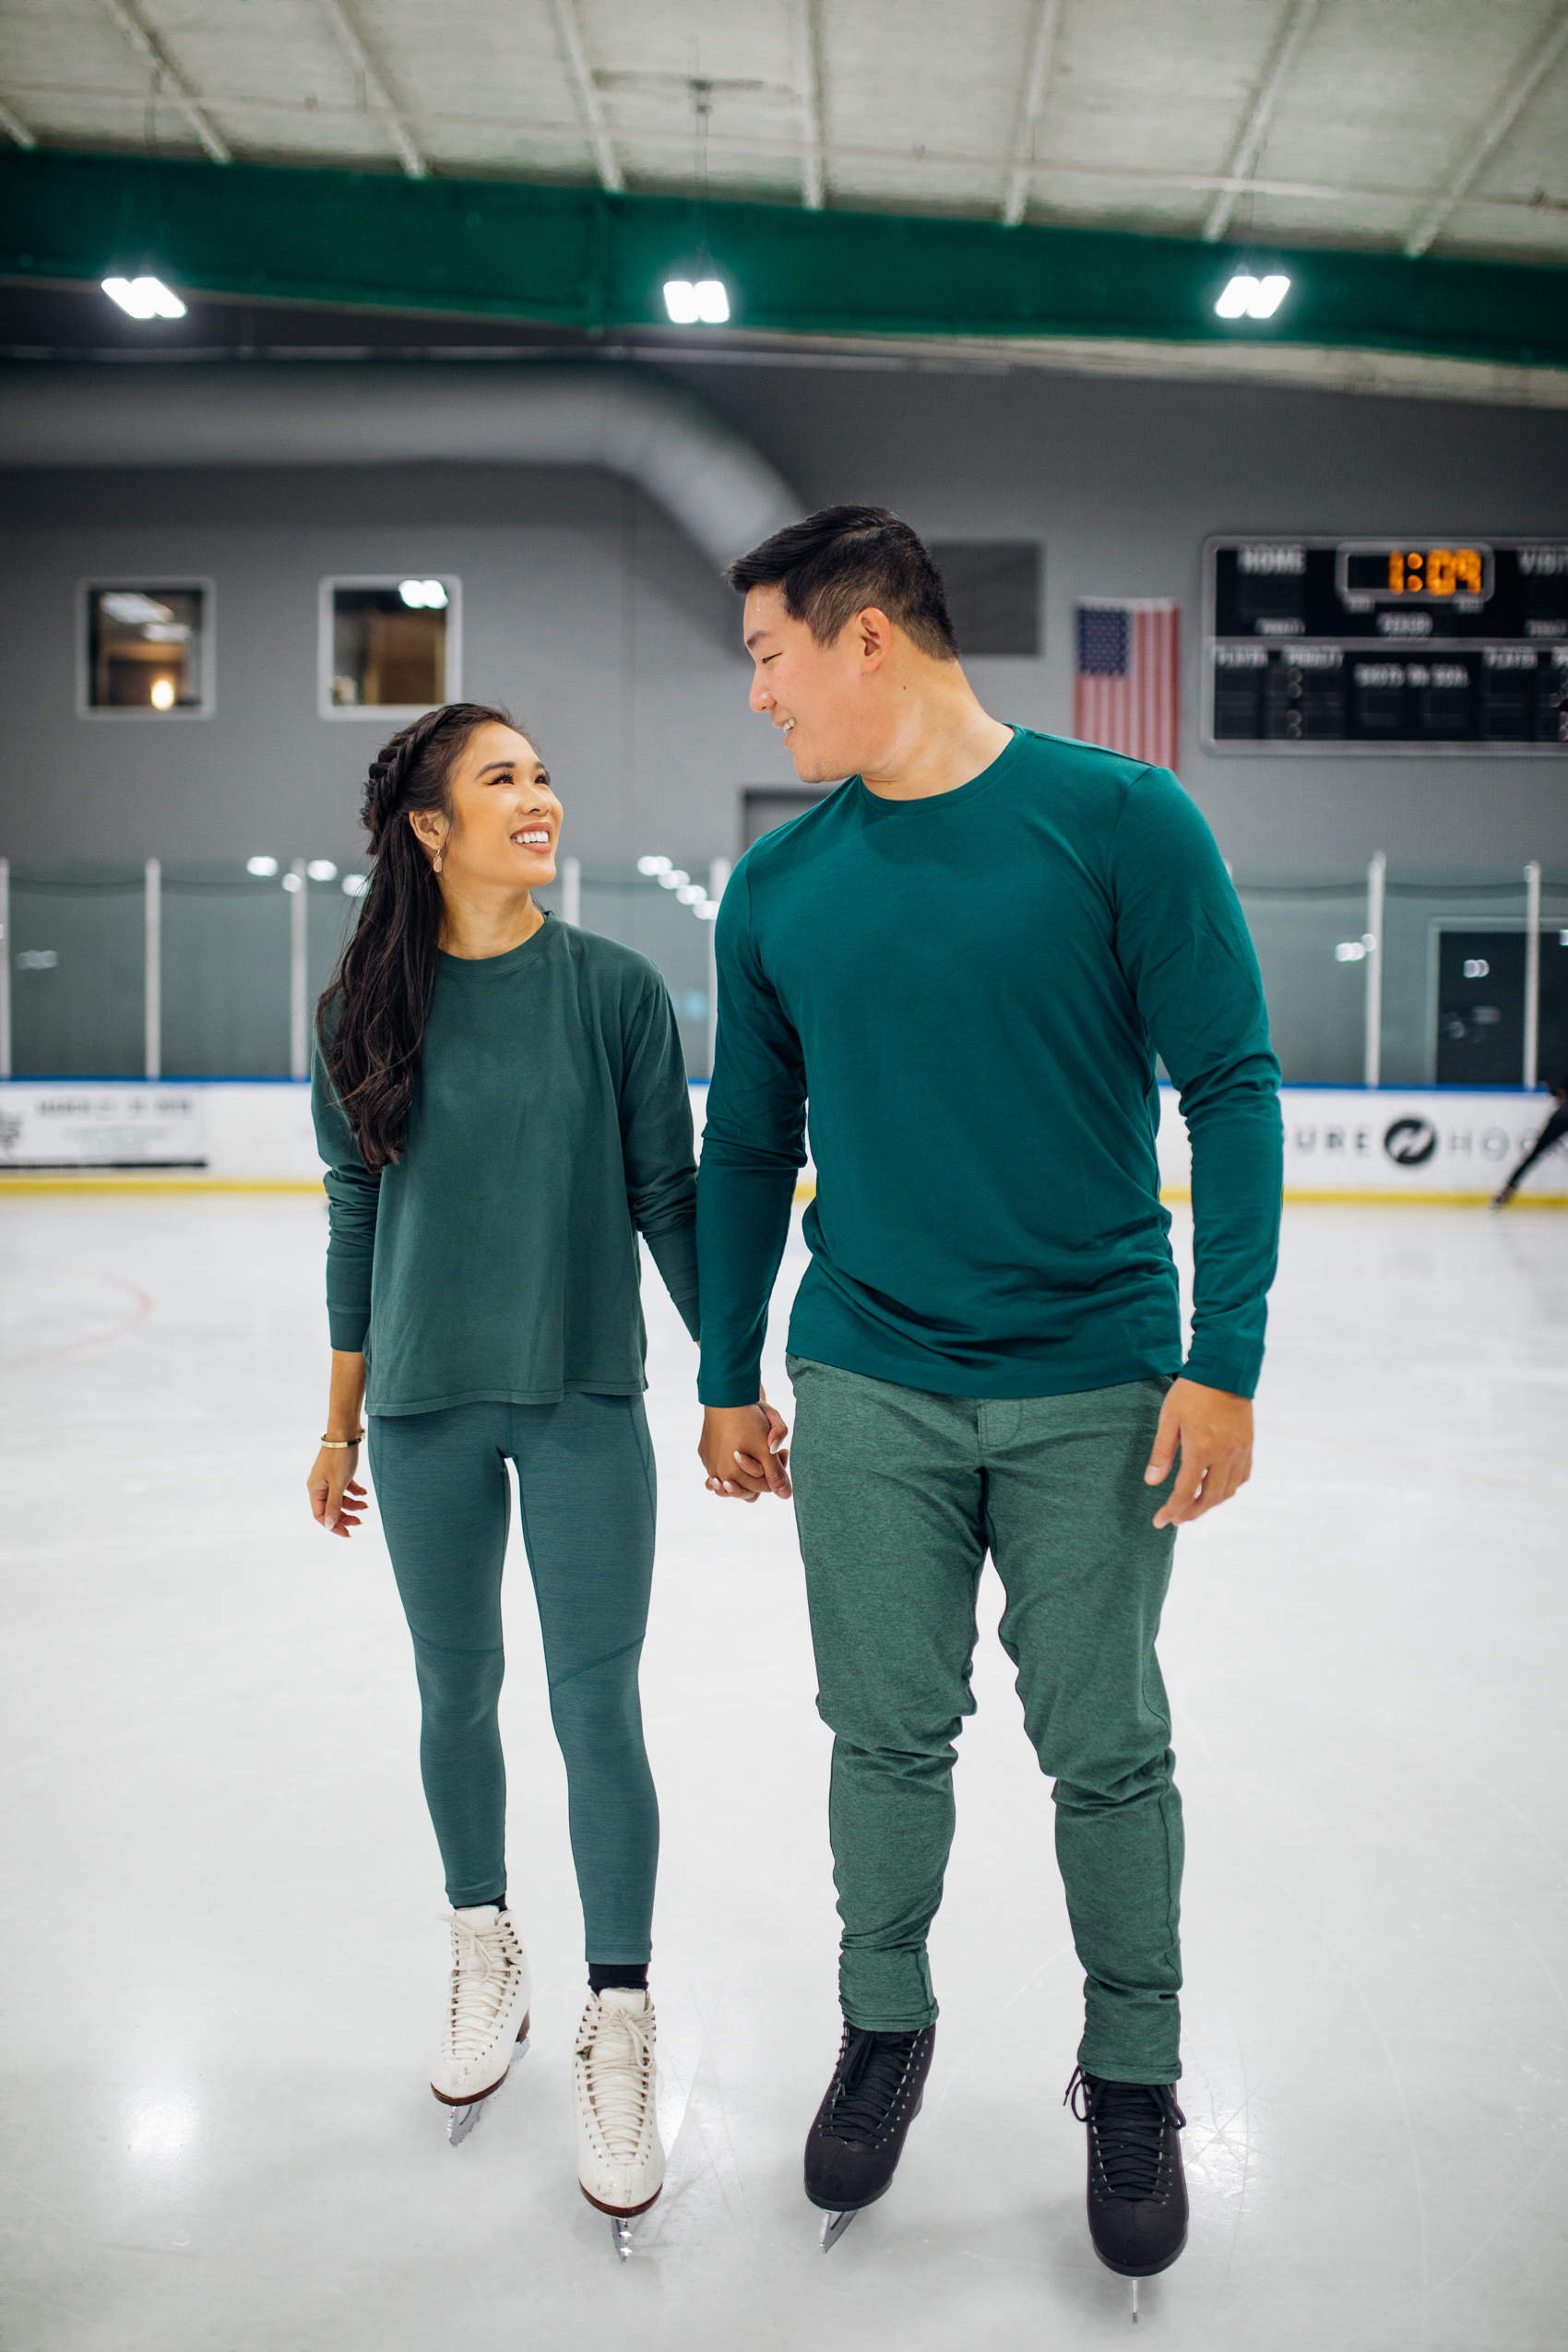 Couples Christmas Photos idae at a skating rink